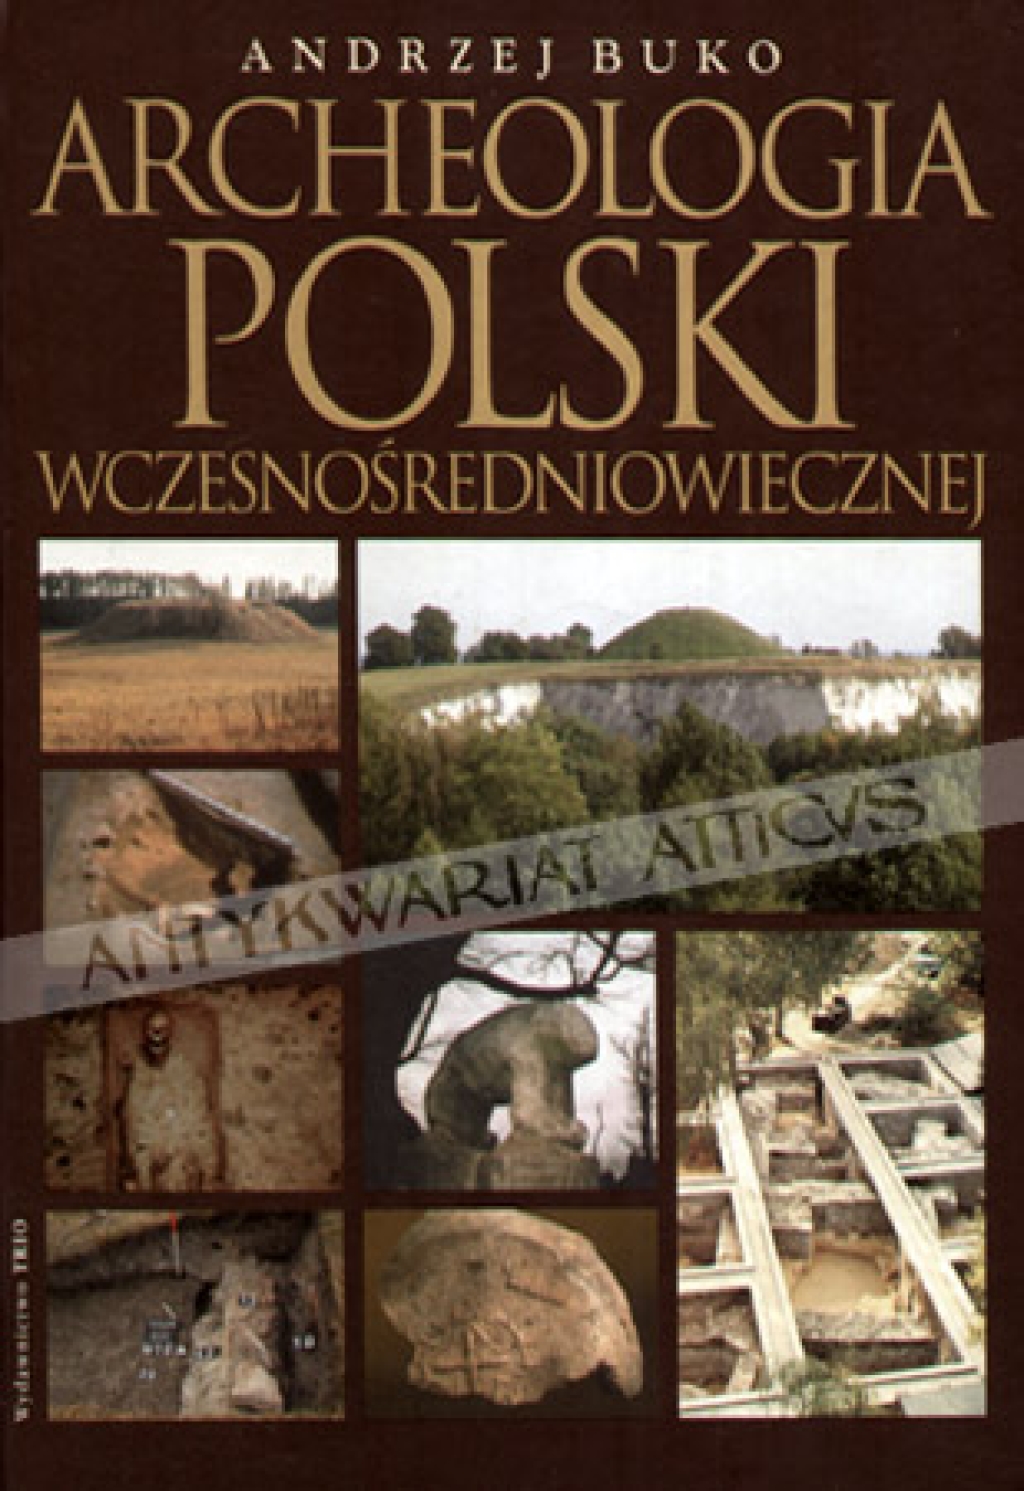 Archeologia Polski wczesnośredniowiecznej. Odkrycia - hipotezy - interpretacje